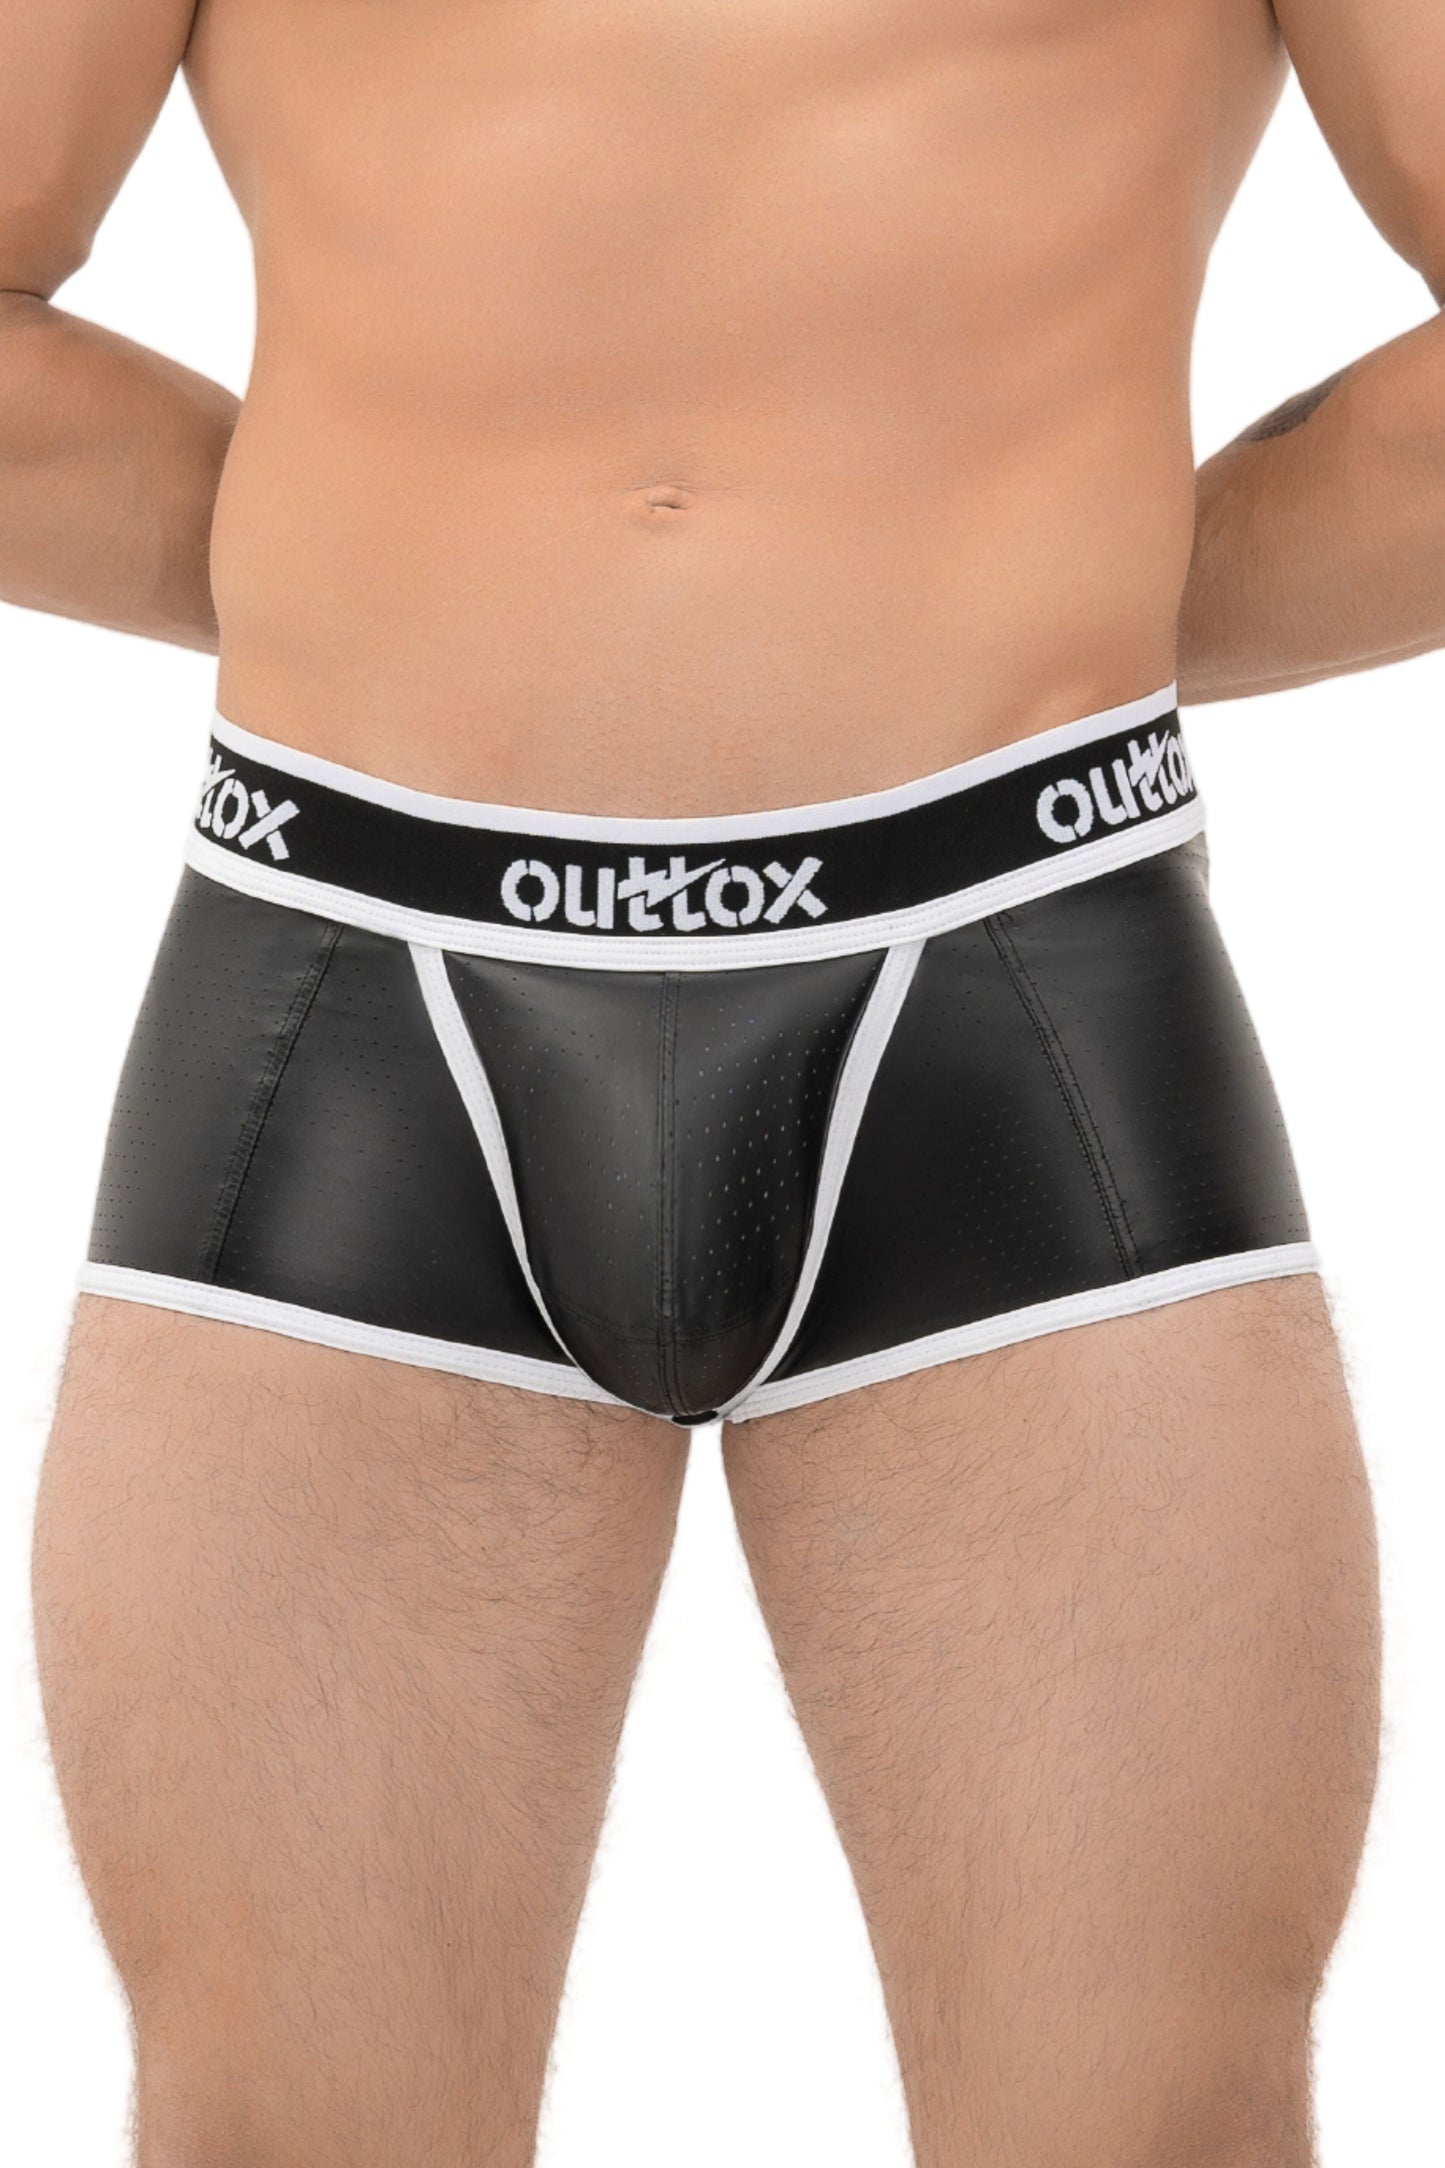 Outtox. Offene hintere Kofferraumshorts mit Snap-Codpiece. Schwarz+Weiß